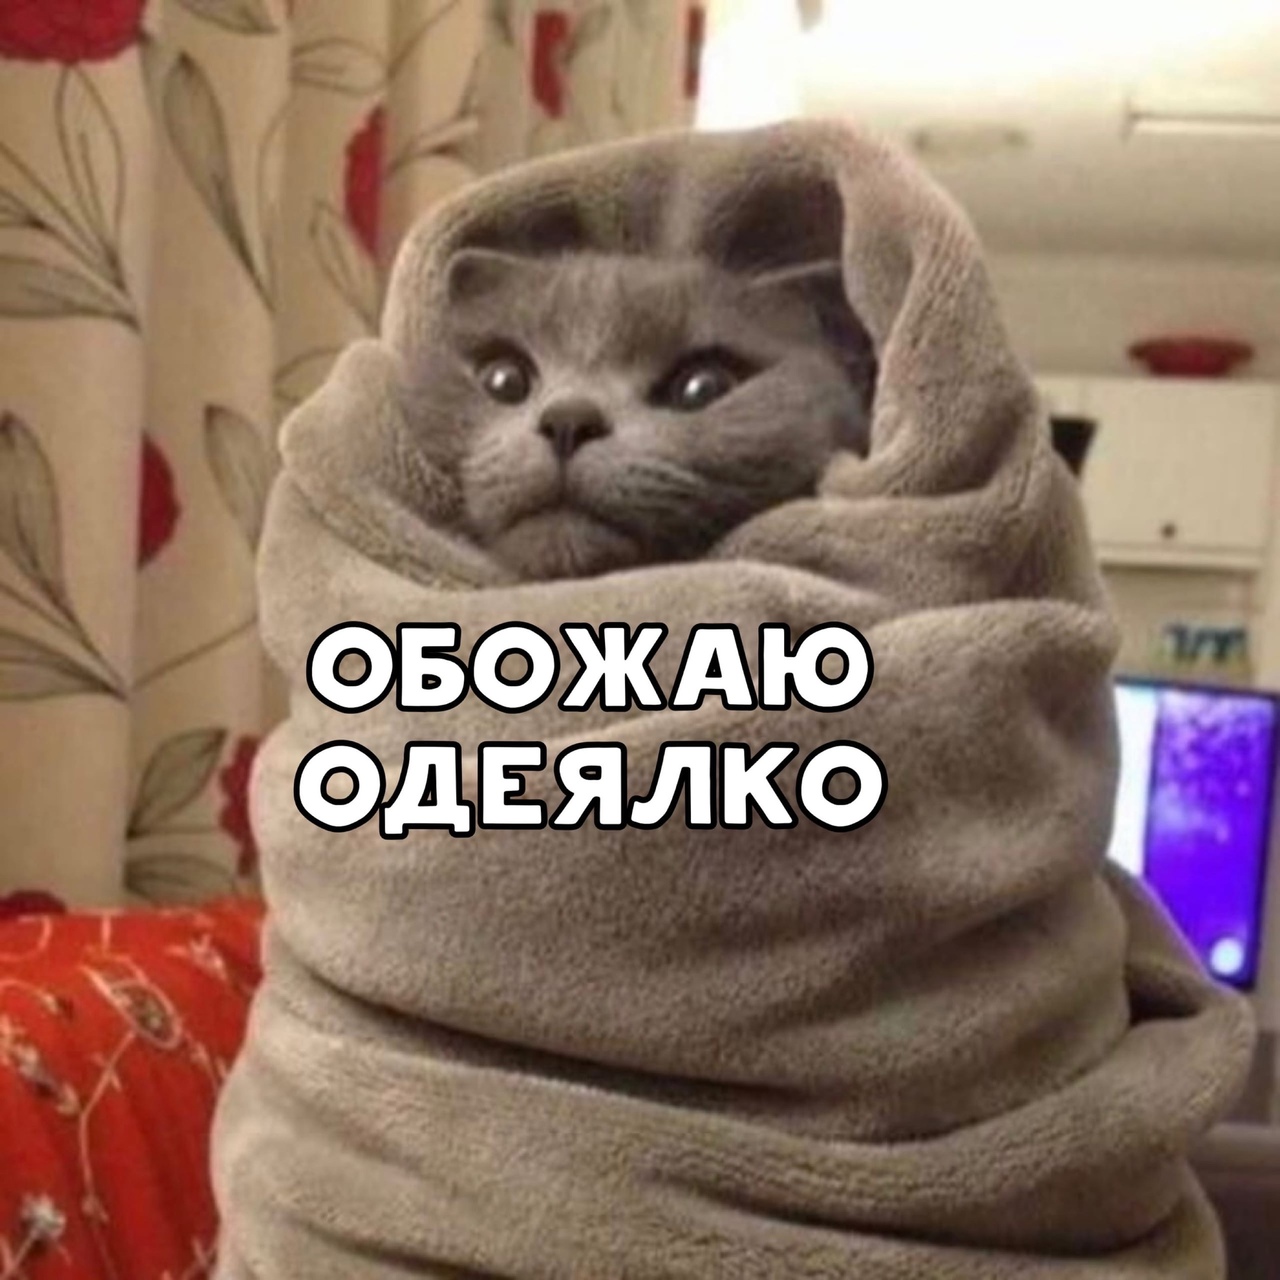 Совсем замерз. Кот в одеяле. Кот в пледе. Бррр холодно. Доброе утро одевайтесь теплее.